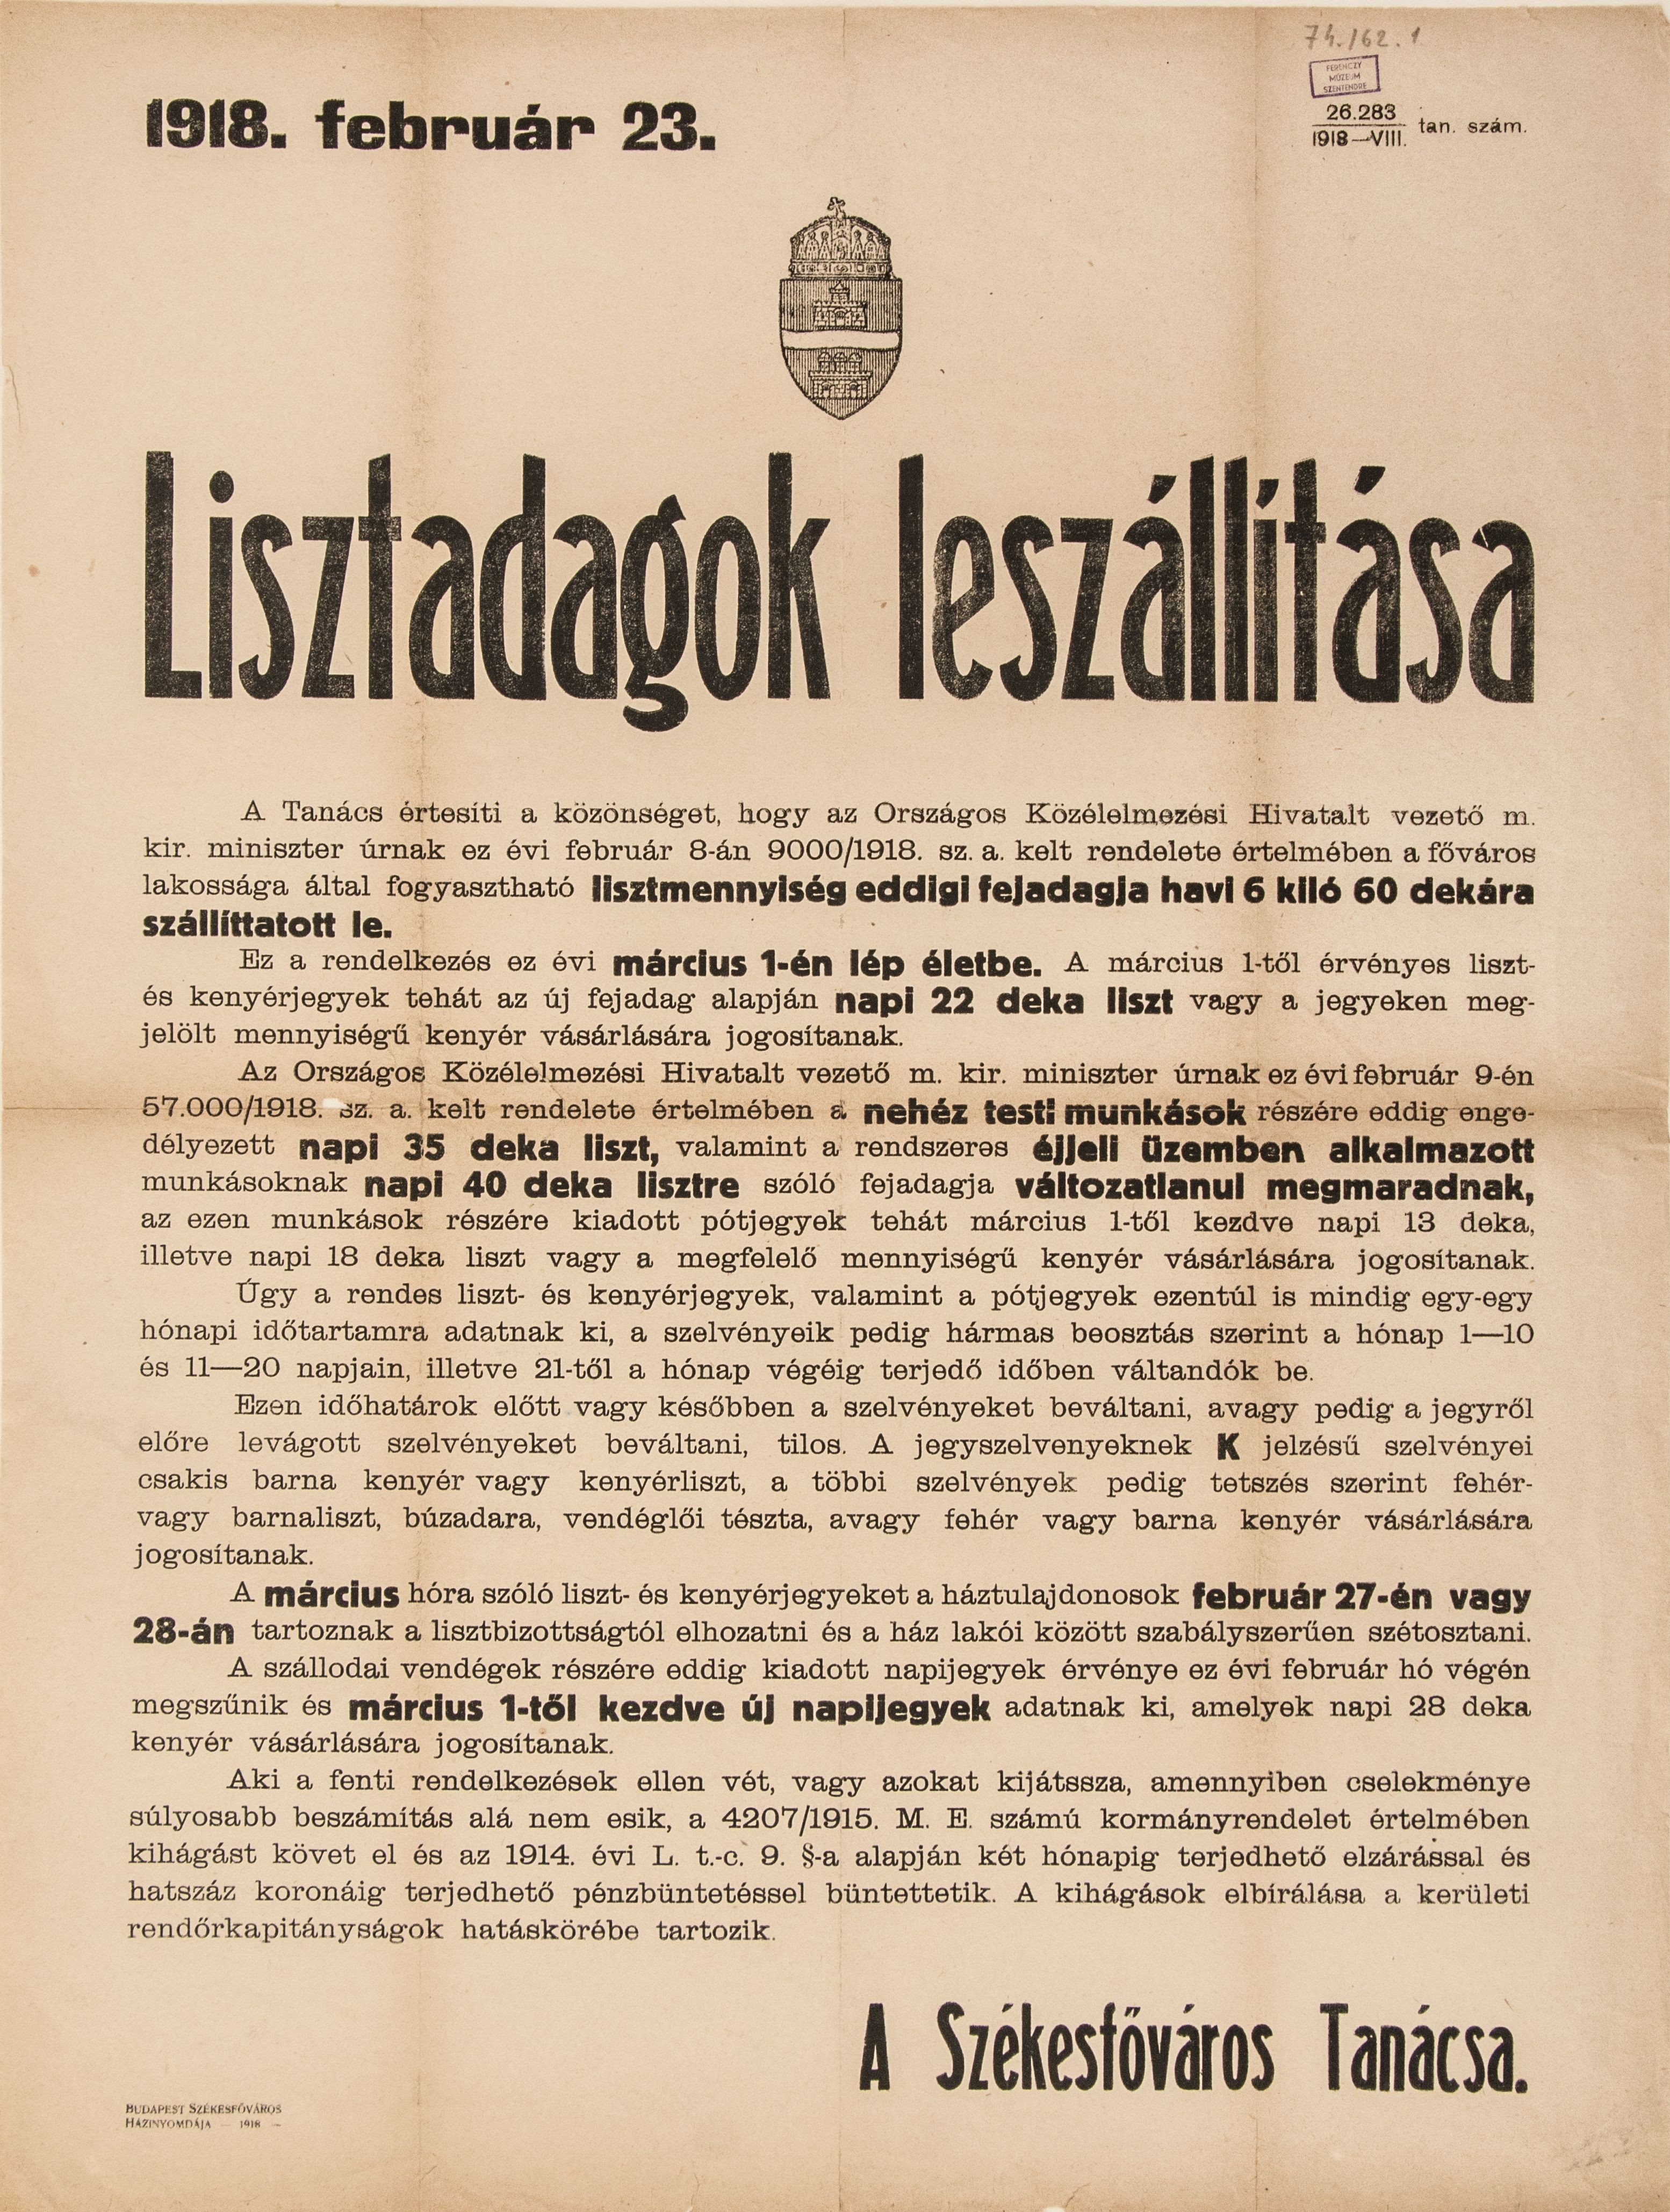 Lisztadagok leszállítása, 1918.02.23. (hirdetmény) (Ferenczy Múzeumi Centrum CC BY-NC-SA)